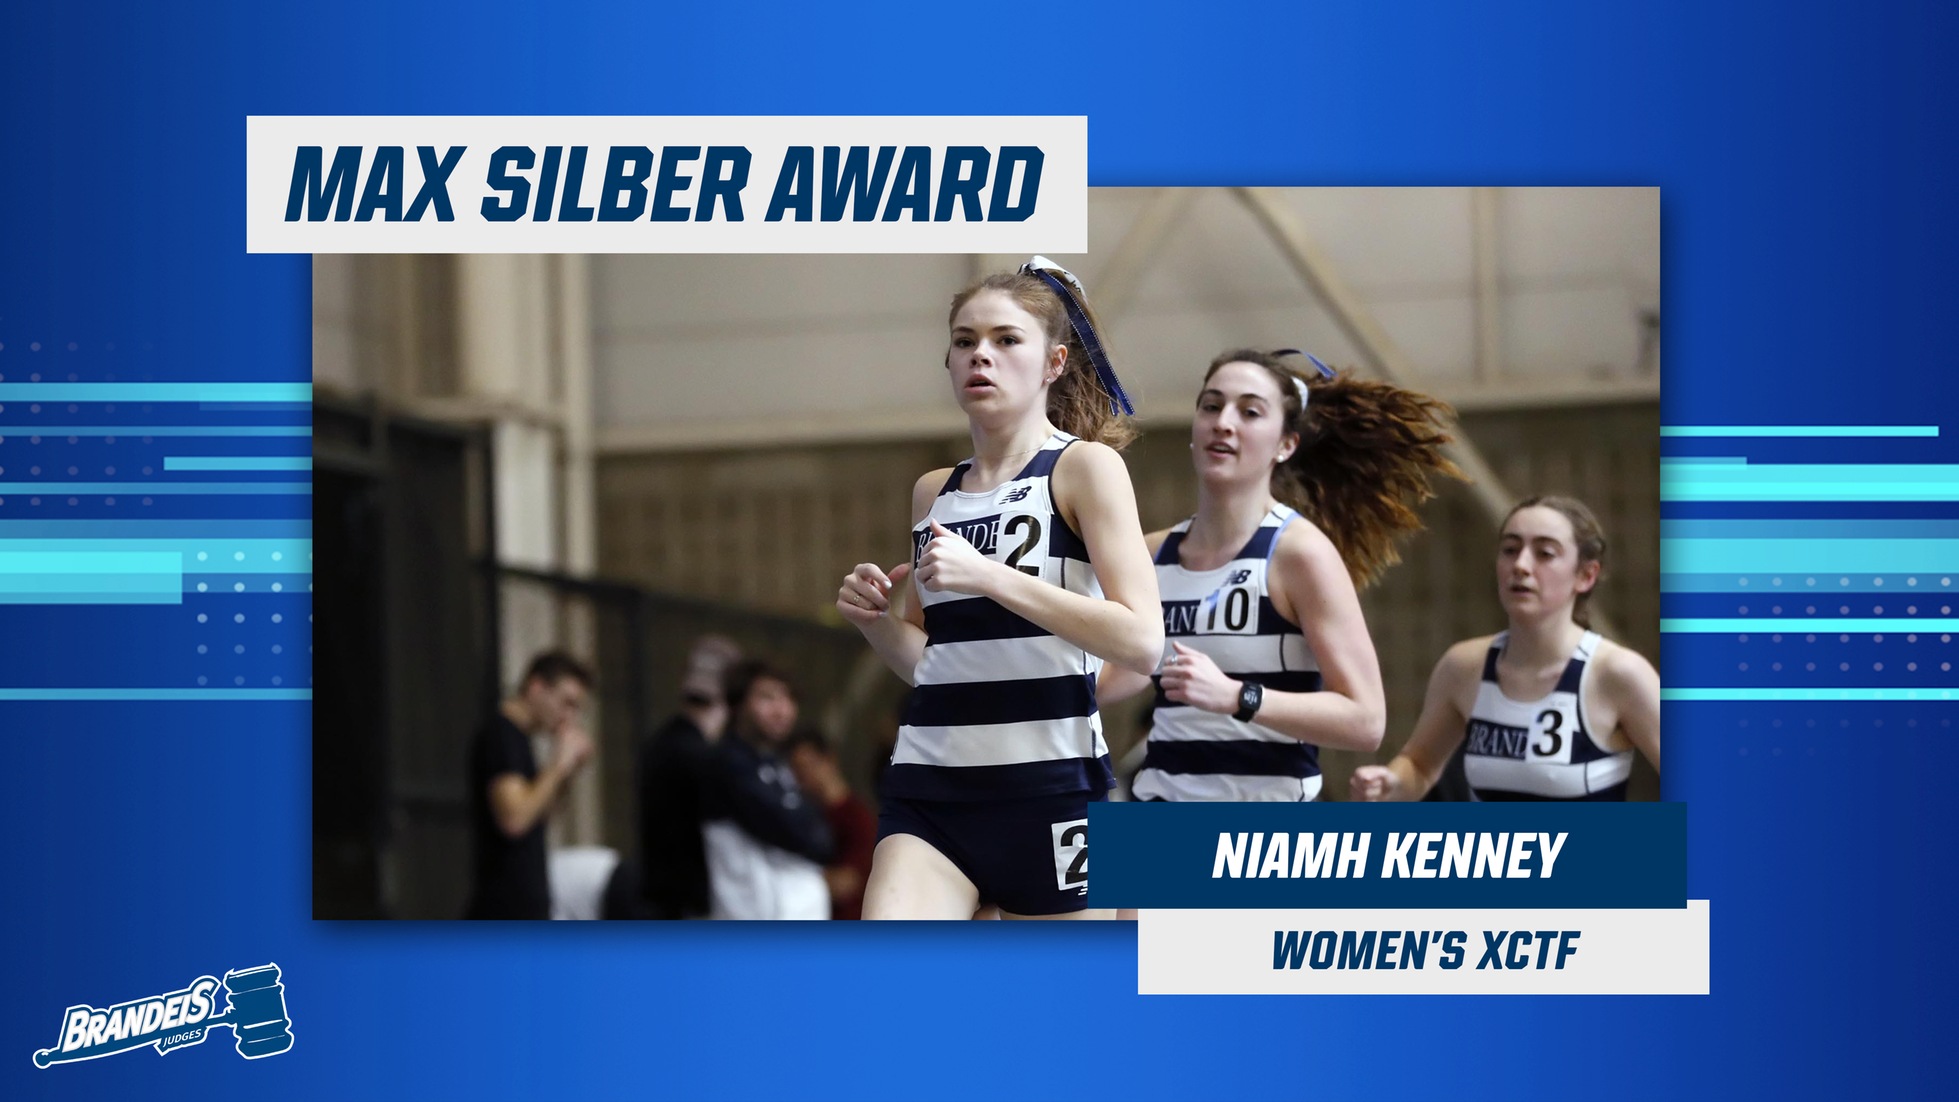 Max I Silber Award Winner Niamh Kenney running indoor track. 